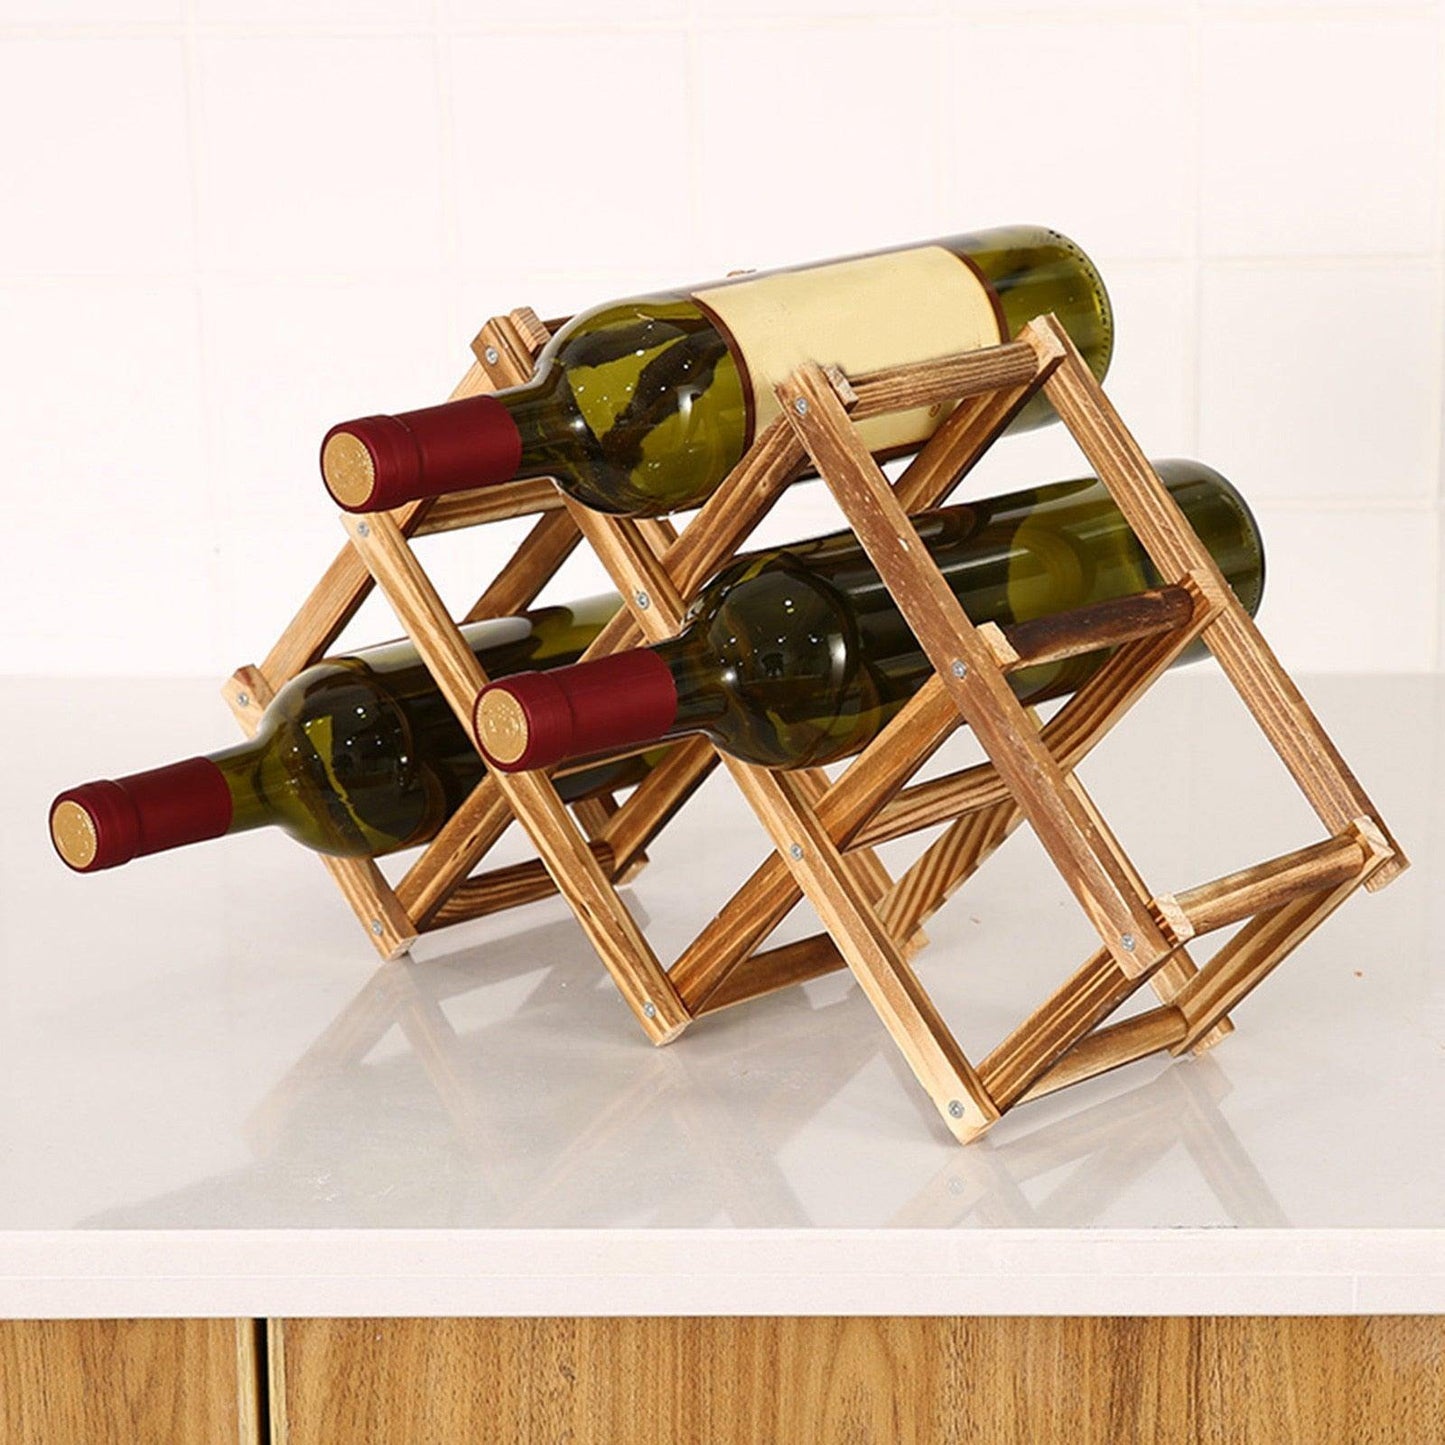 Wooden Wine Storage Rack - Sports, Wine & Gadgets